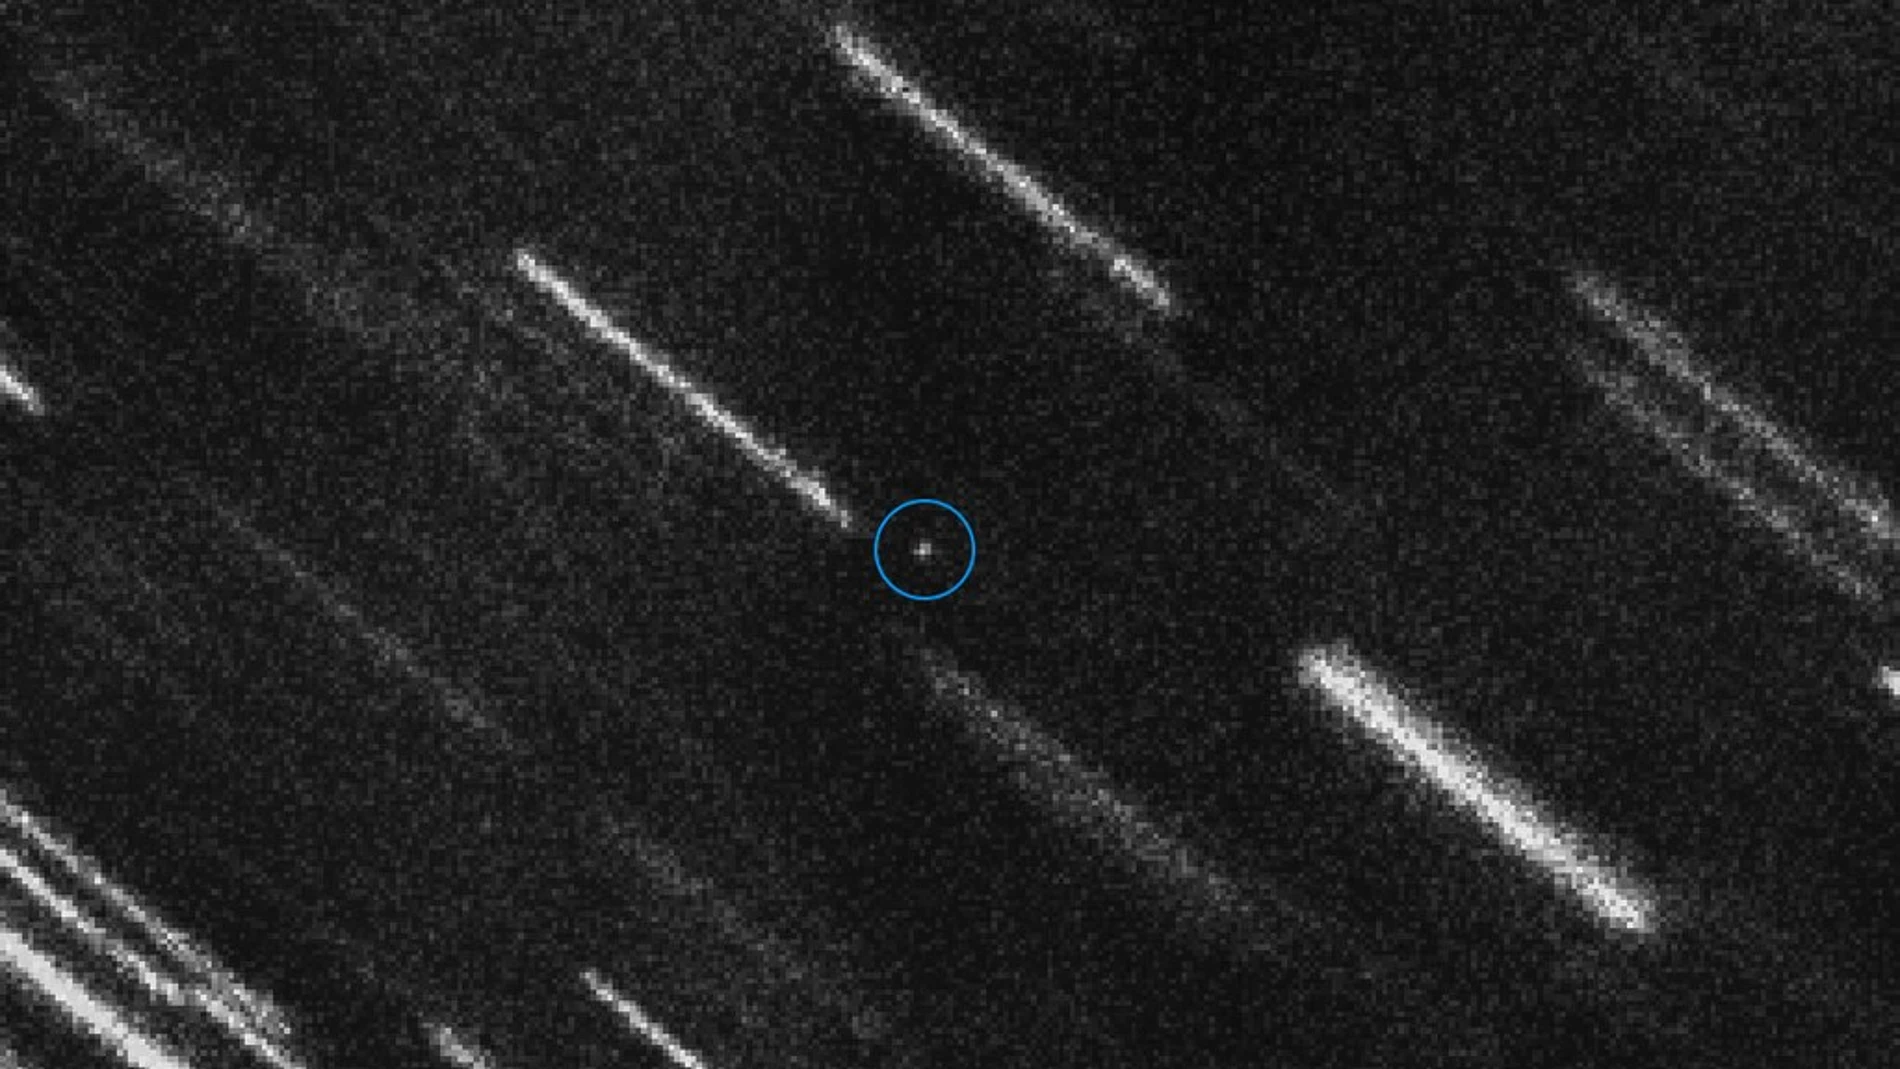 Imagen del asteroide 2012 TC4, compuesta a partir de 37 fotografías individuales. Las estelas son el resultado de superponer las estrellas de cada fotografía.